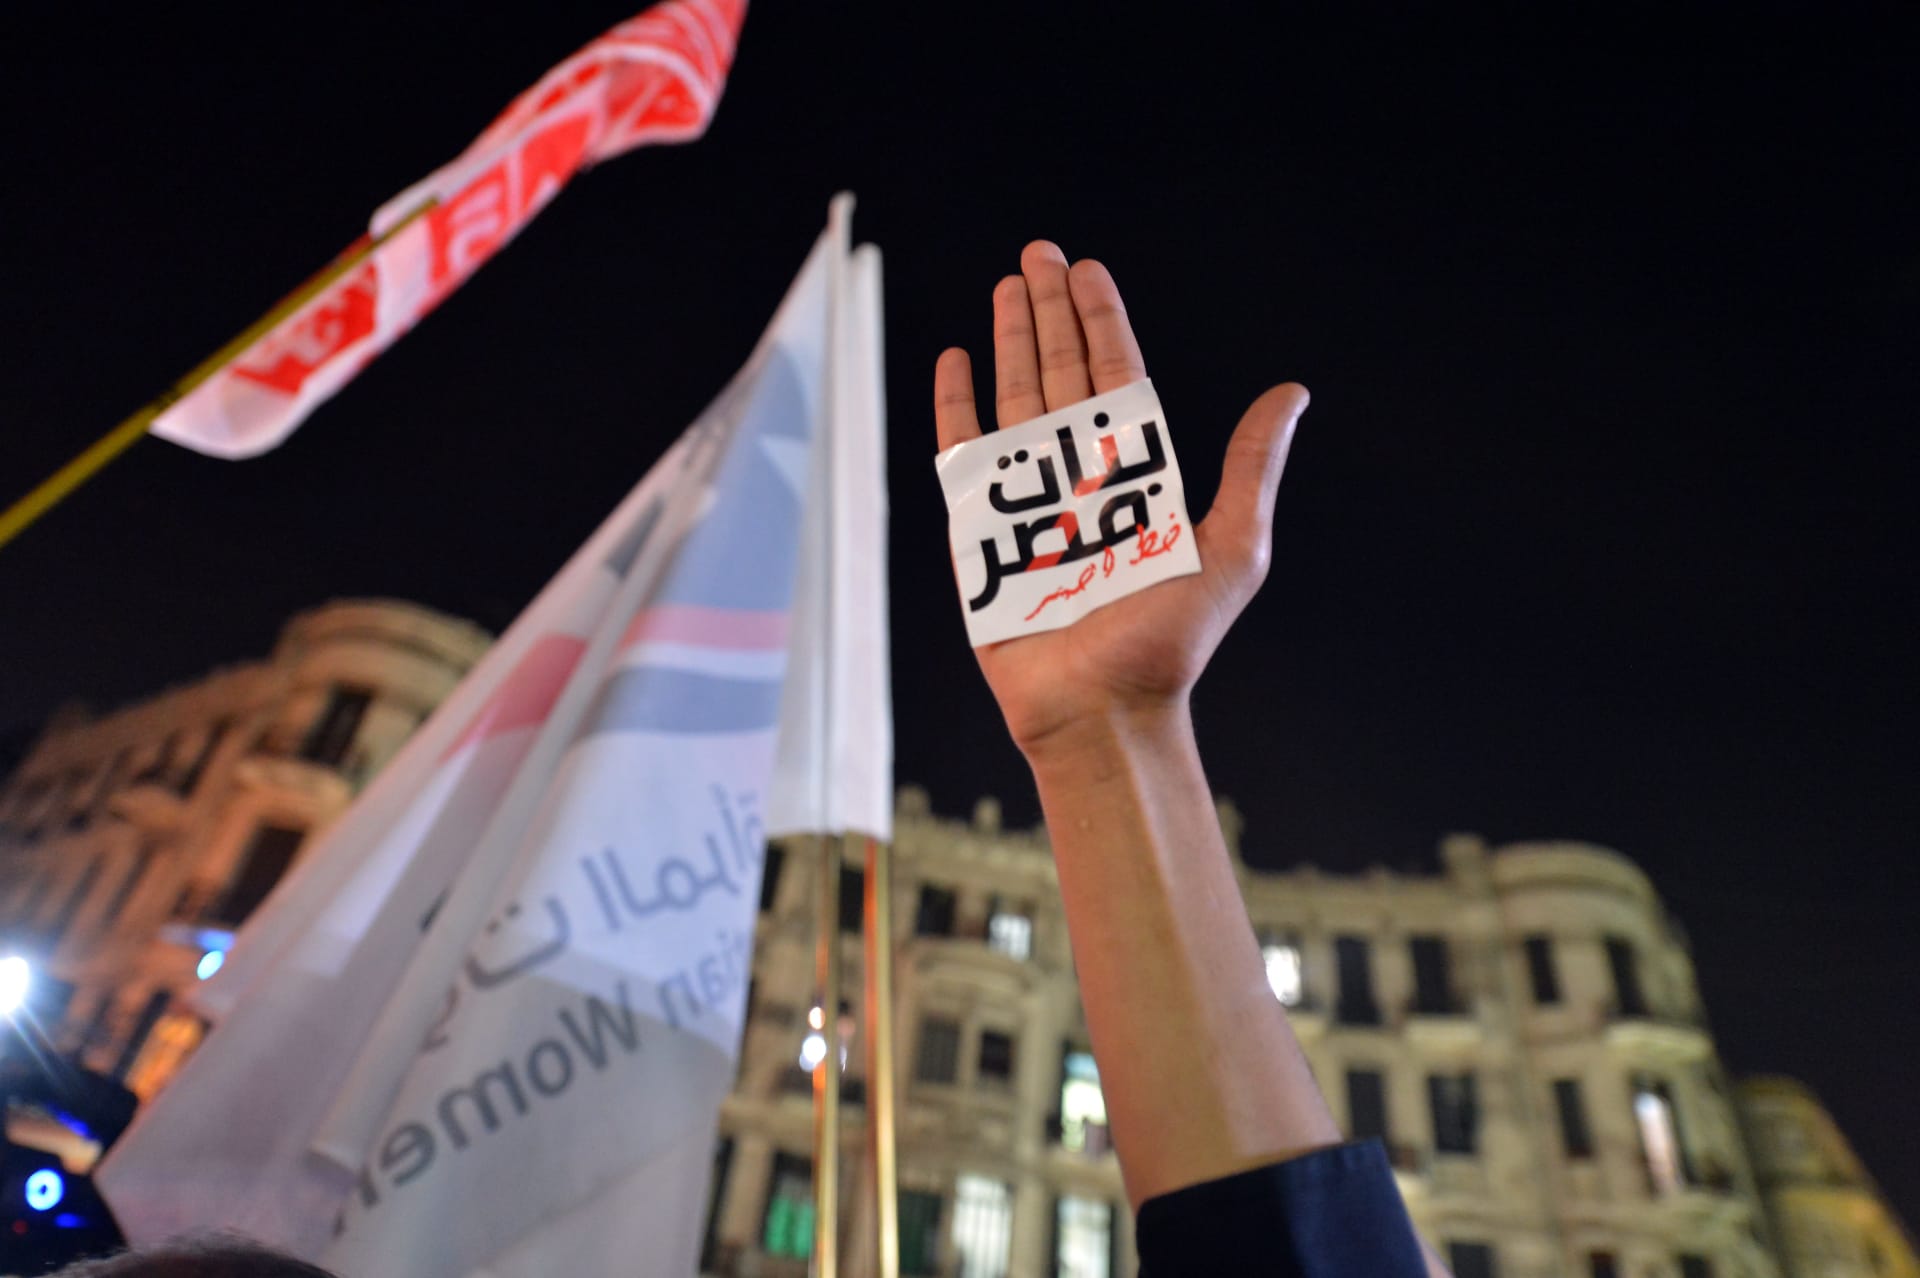 متظاهر مصري يرفع يده بشعار مكتوب بالعربية: "الفتيات المصريات خط أحمر" خلال مظاهرة في القاهرة ضد التحرش الجنسي في 12 فبراير 2013.